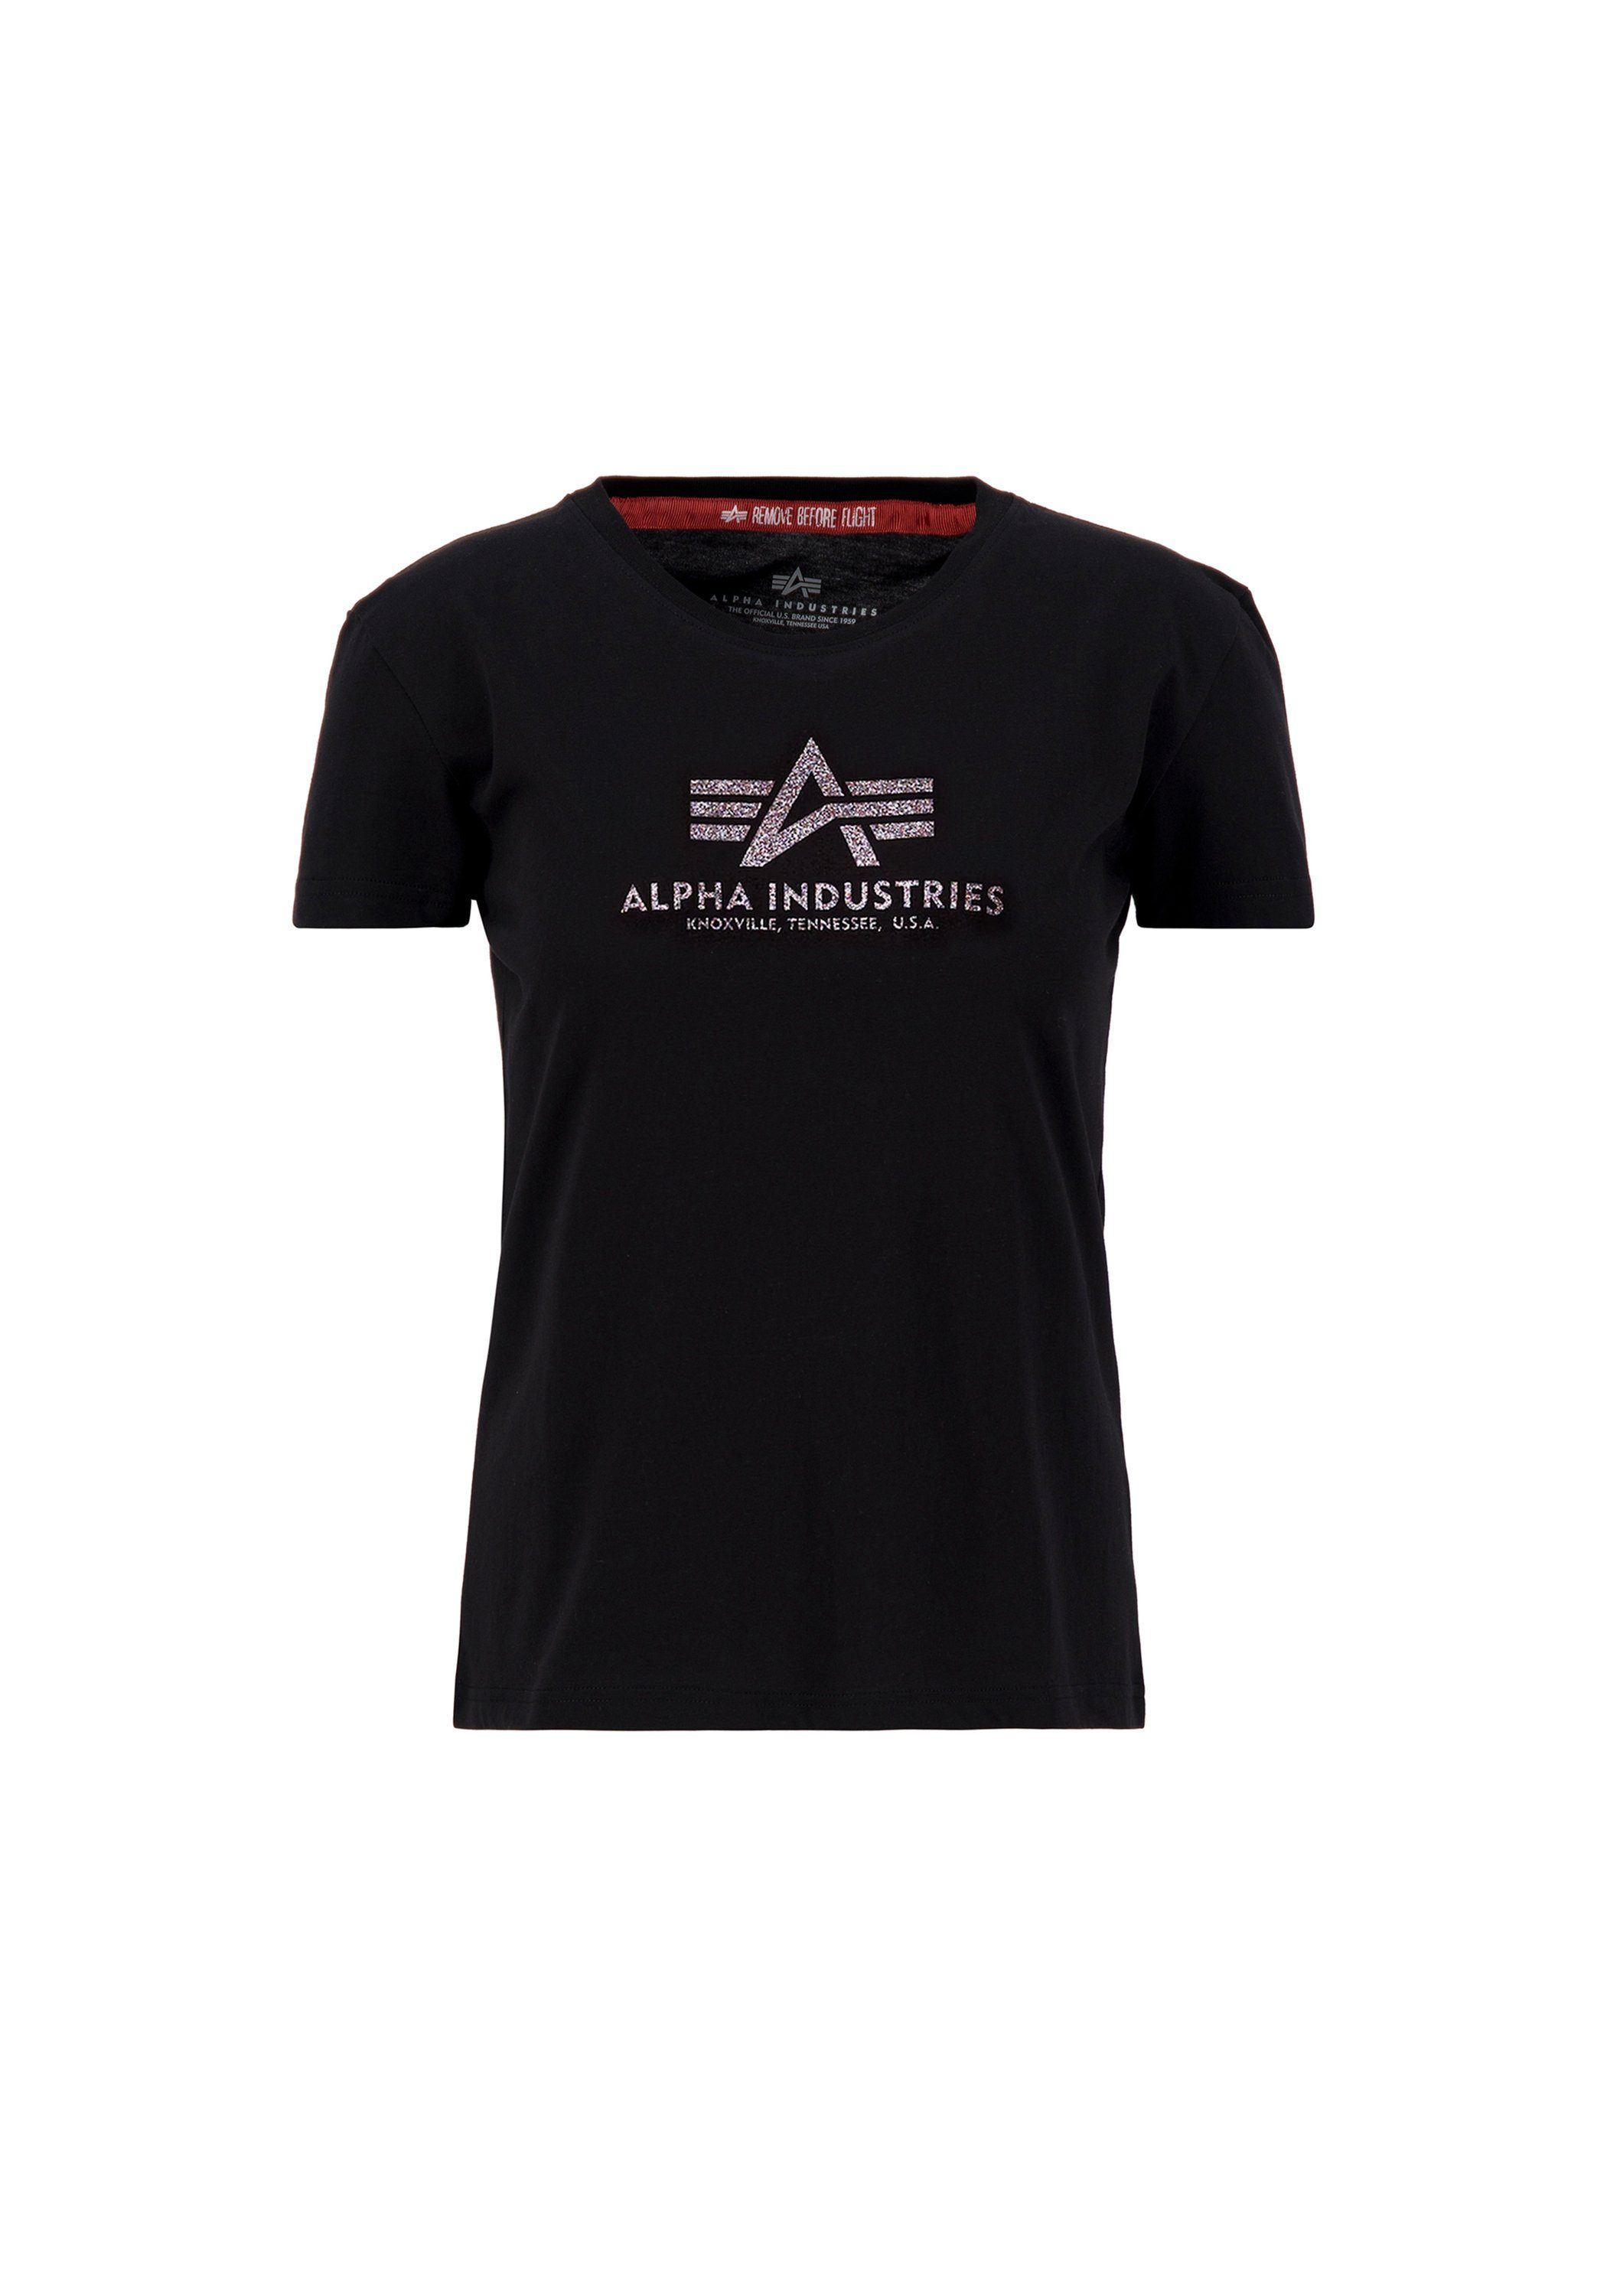 Alpha Industries T-Shirt ALPHA INDUSTRIES Women - Футболки New Basic T G Wmn